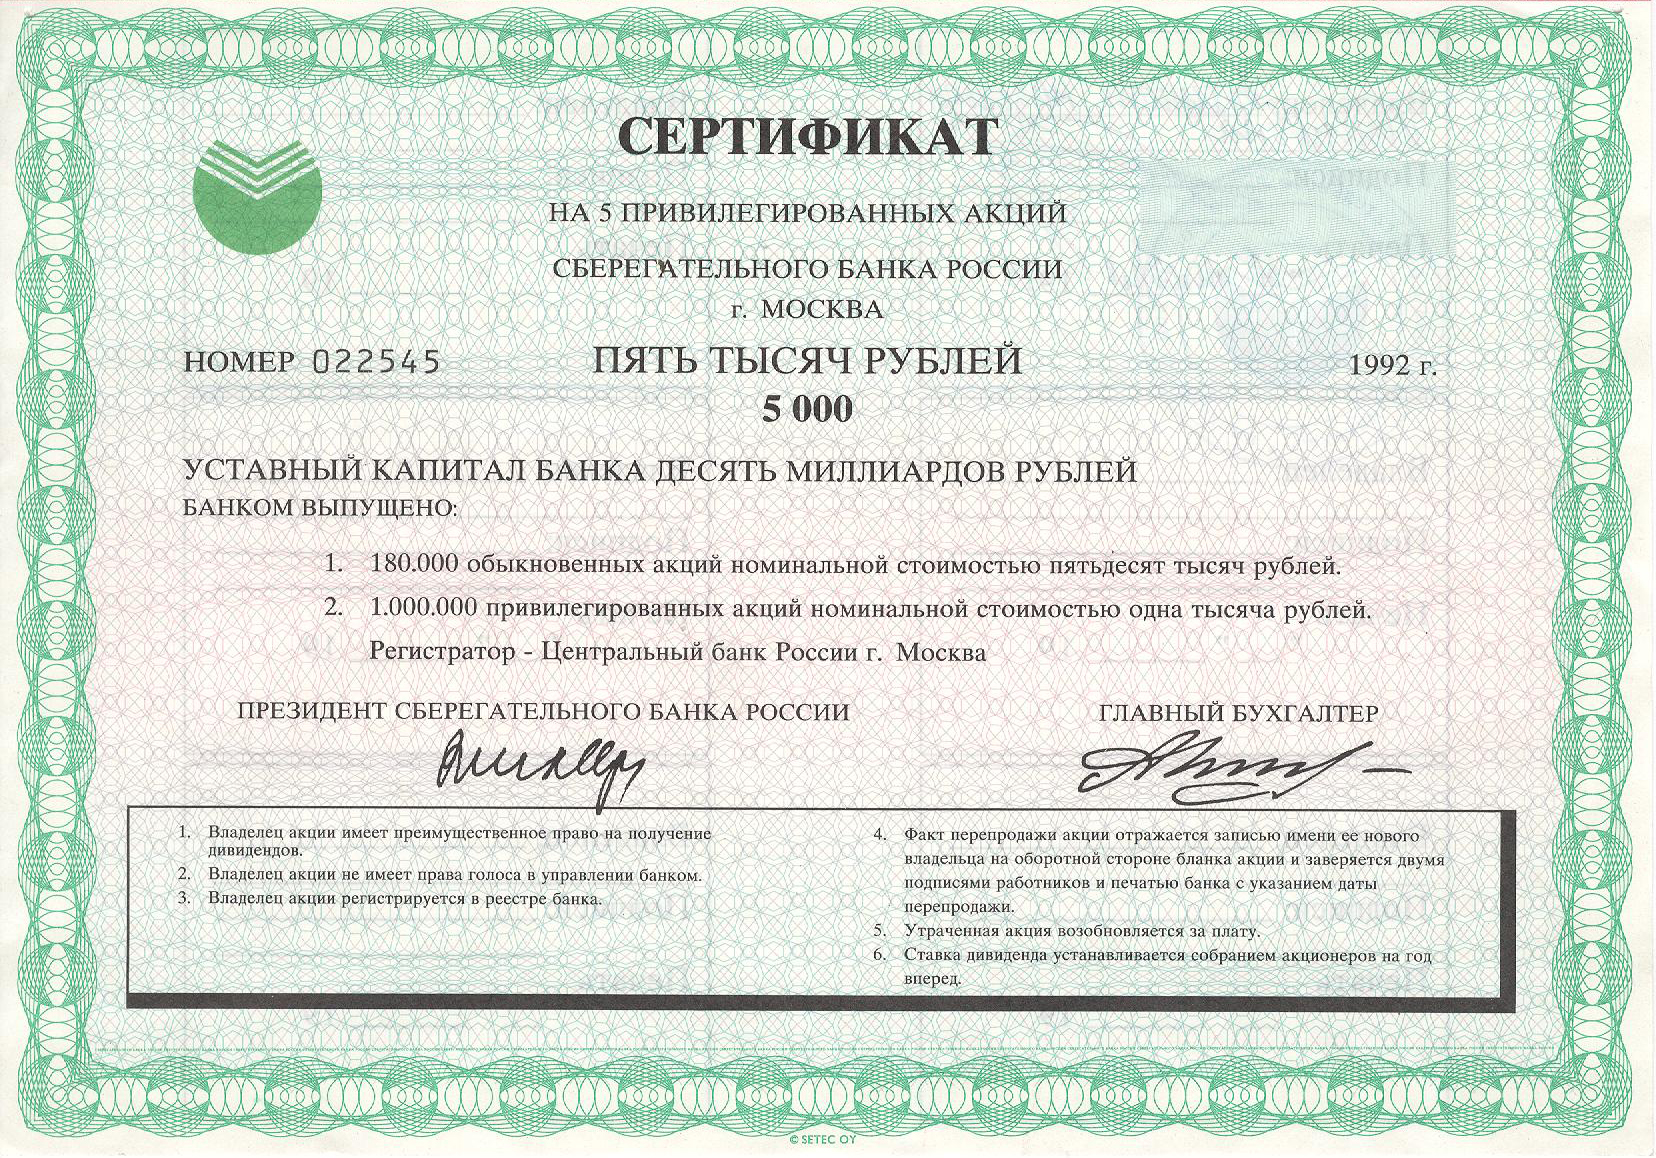 5000 рублей - нарицательная стоимость данной ценной бумаги.